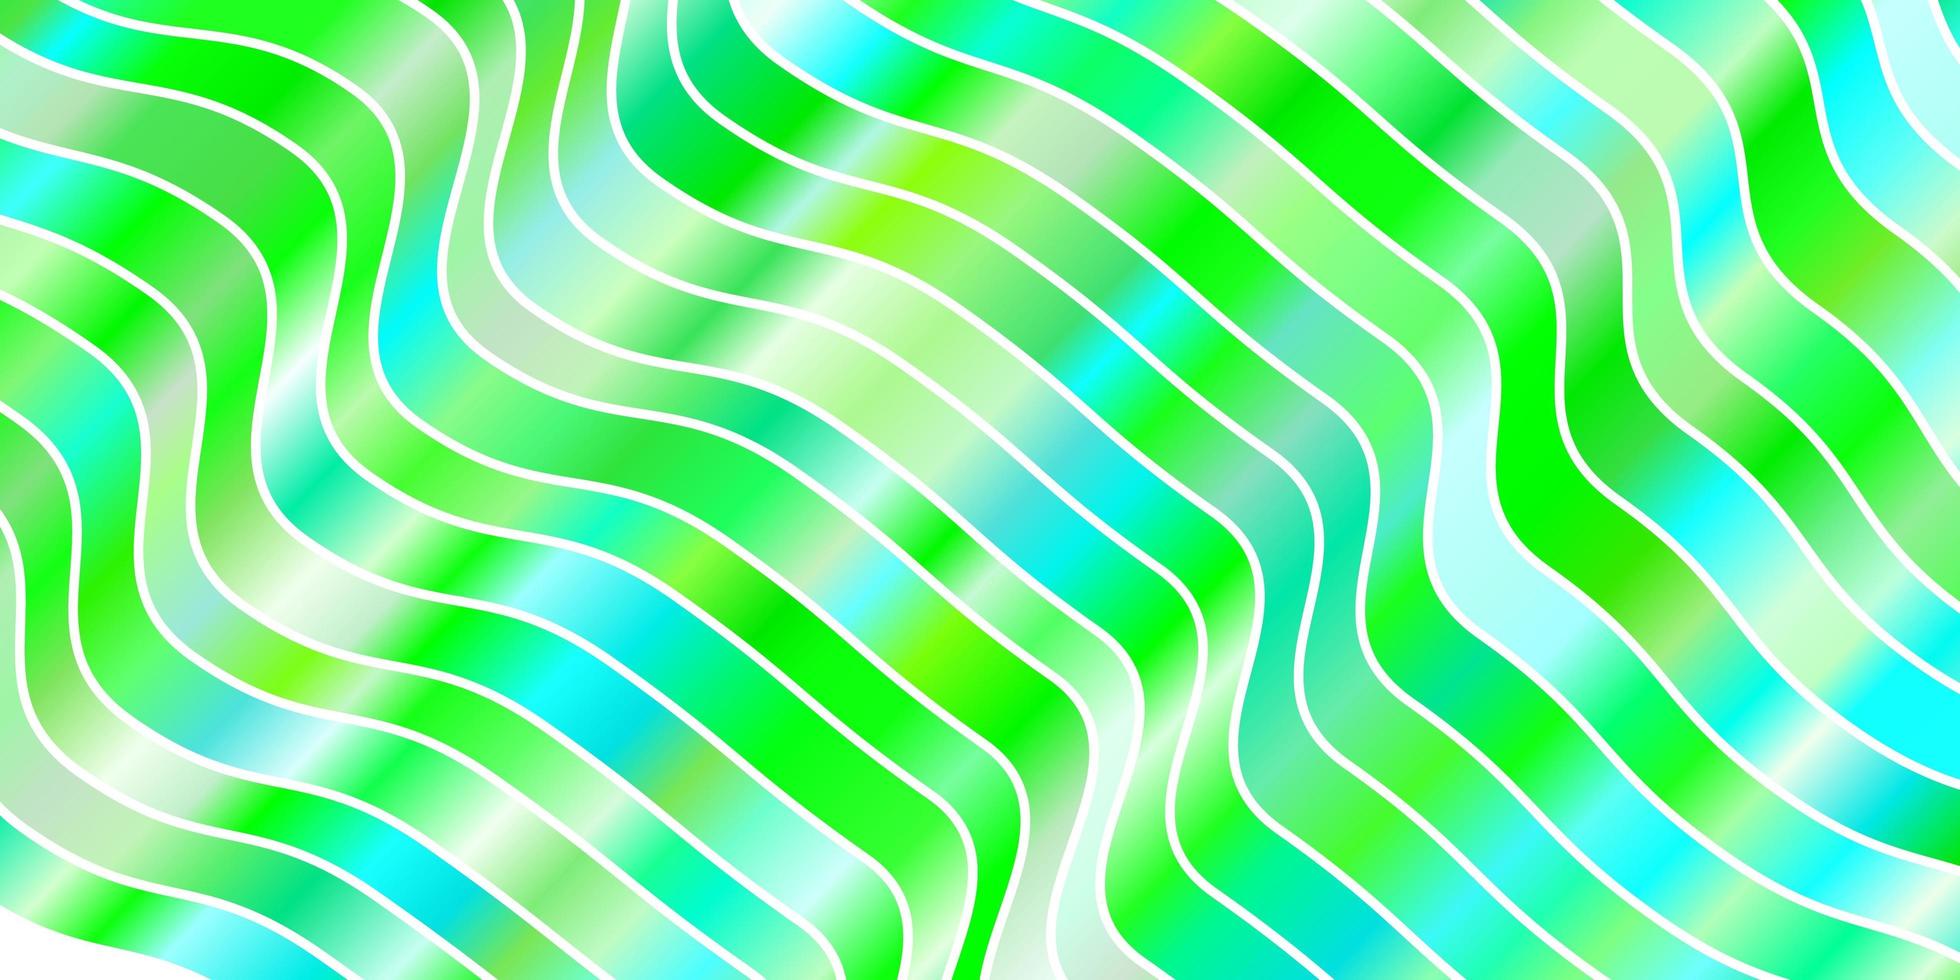 modelo de vetor verde claro com curvas.